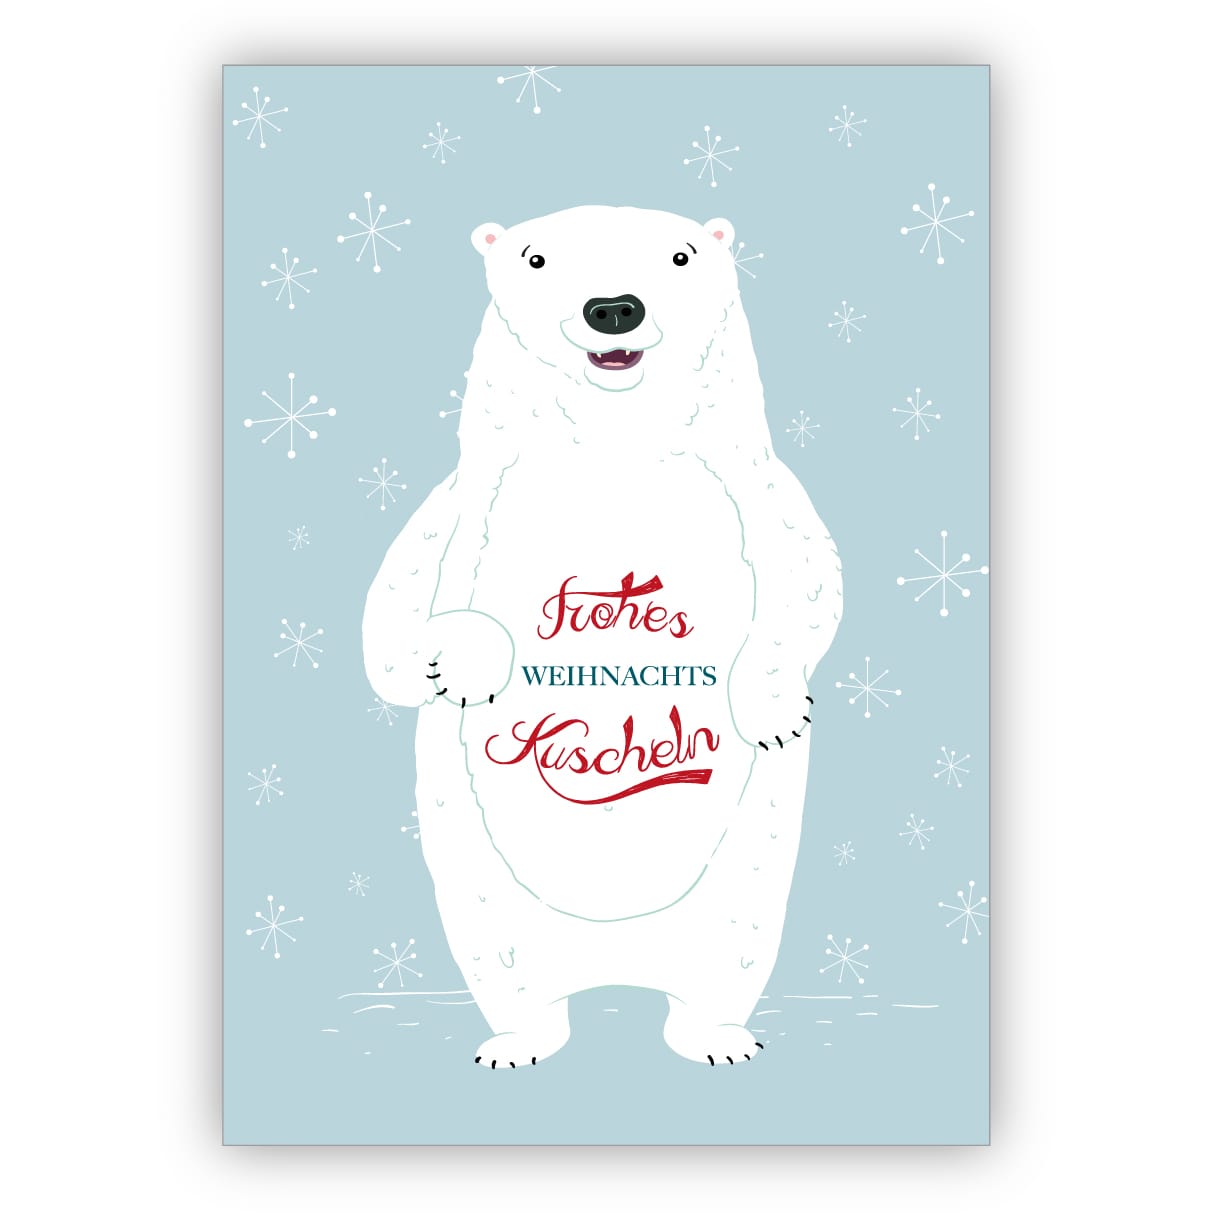 Süße Eisbären Weihnachtskarte mit nettem Weihnachtsgruß: Frohes Weihnachtskuscheln